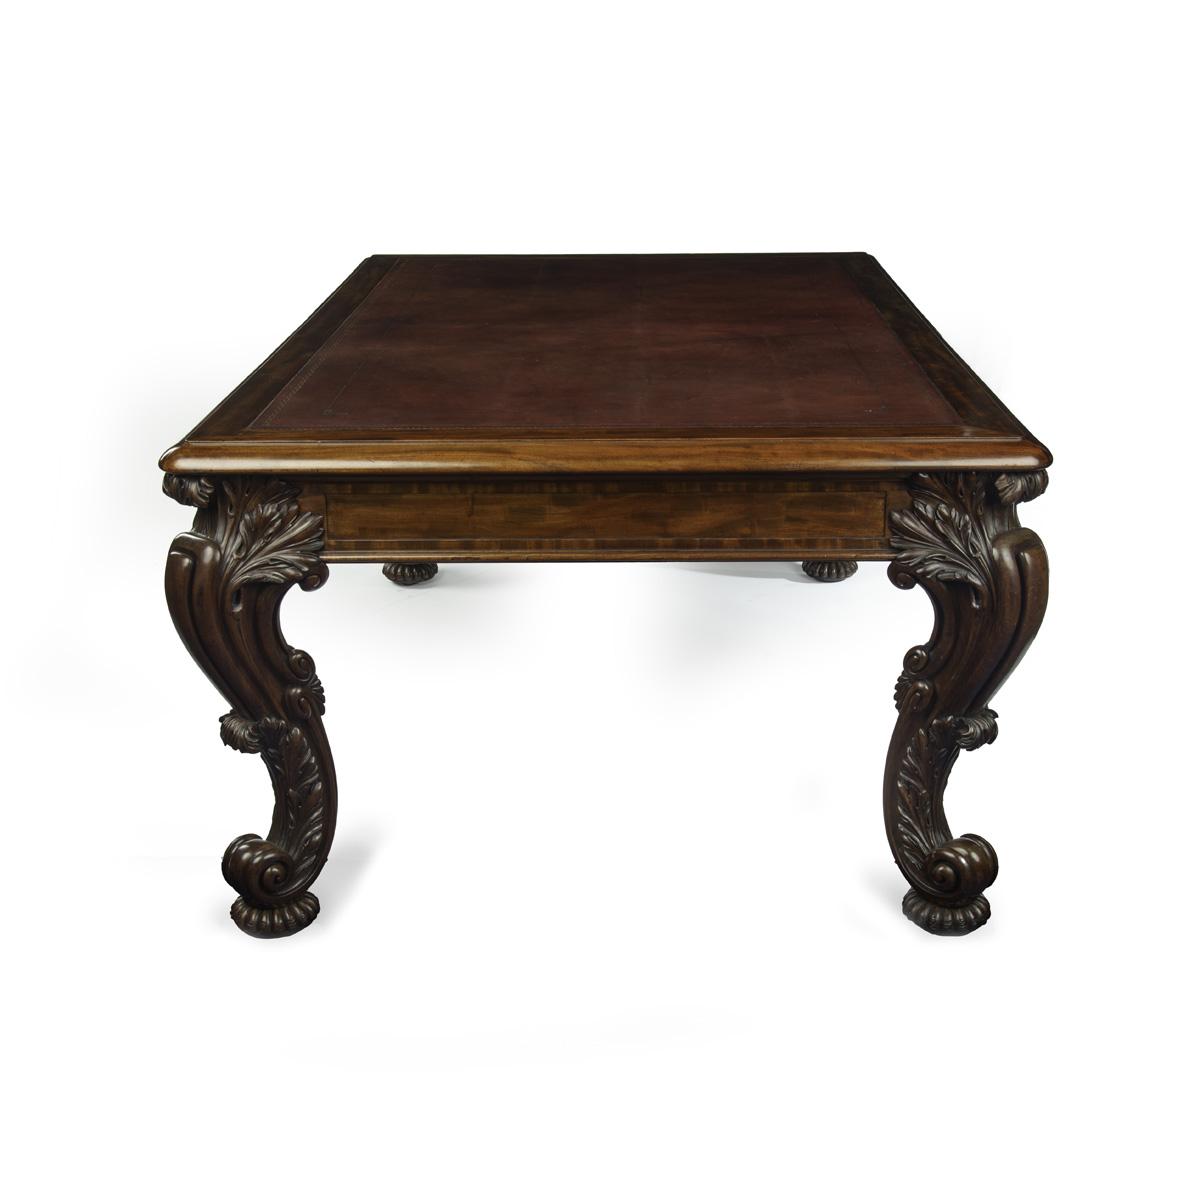 Regency mahogany partner’s library table